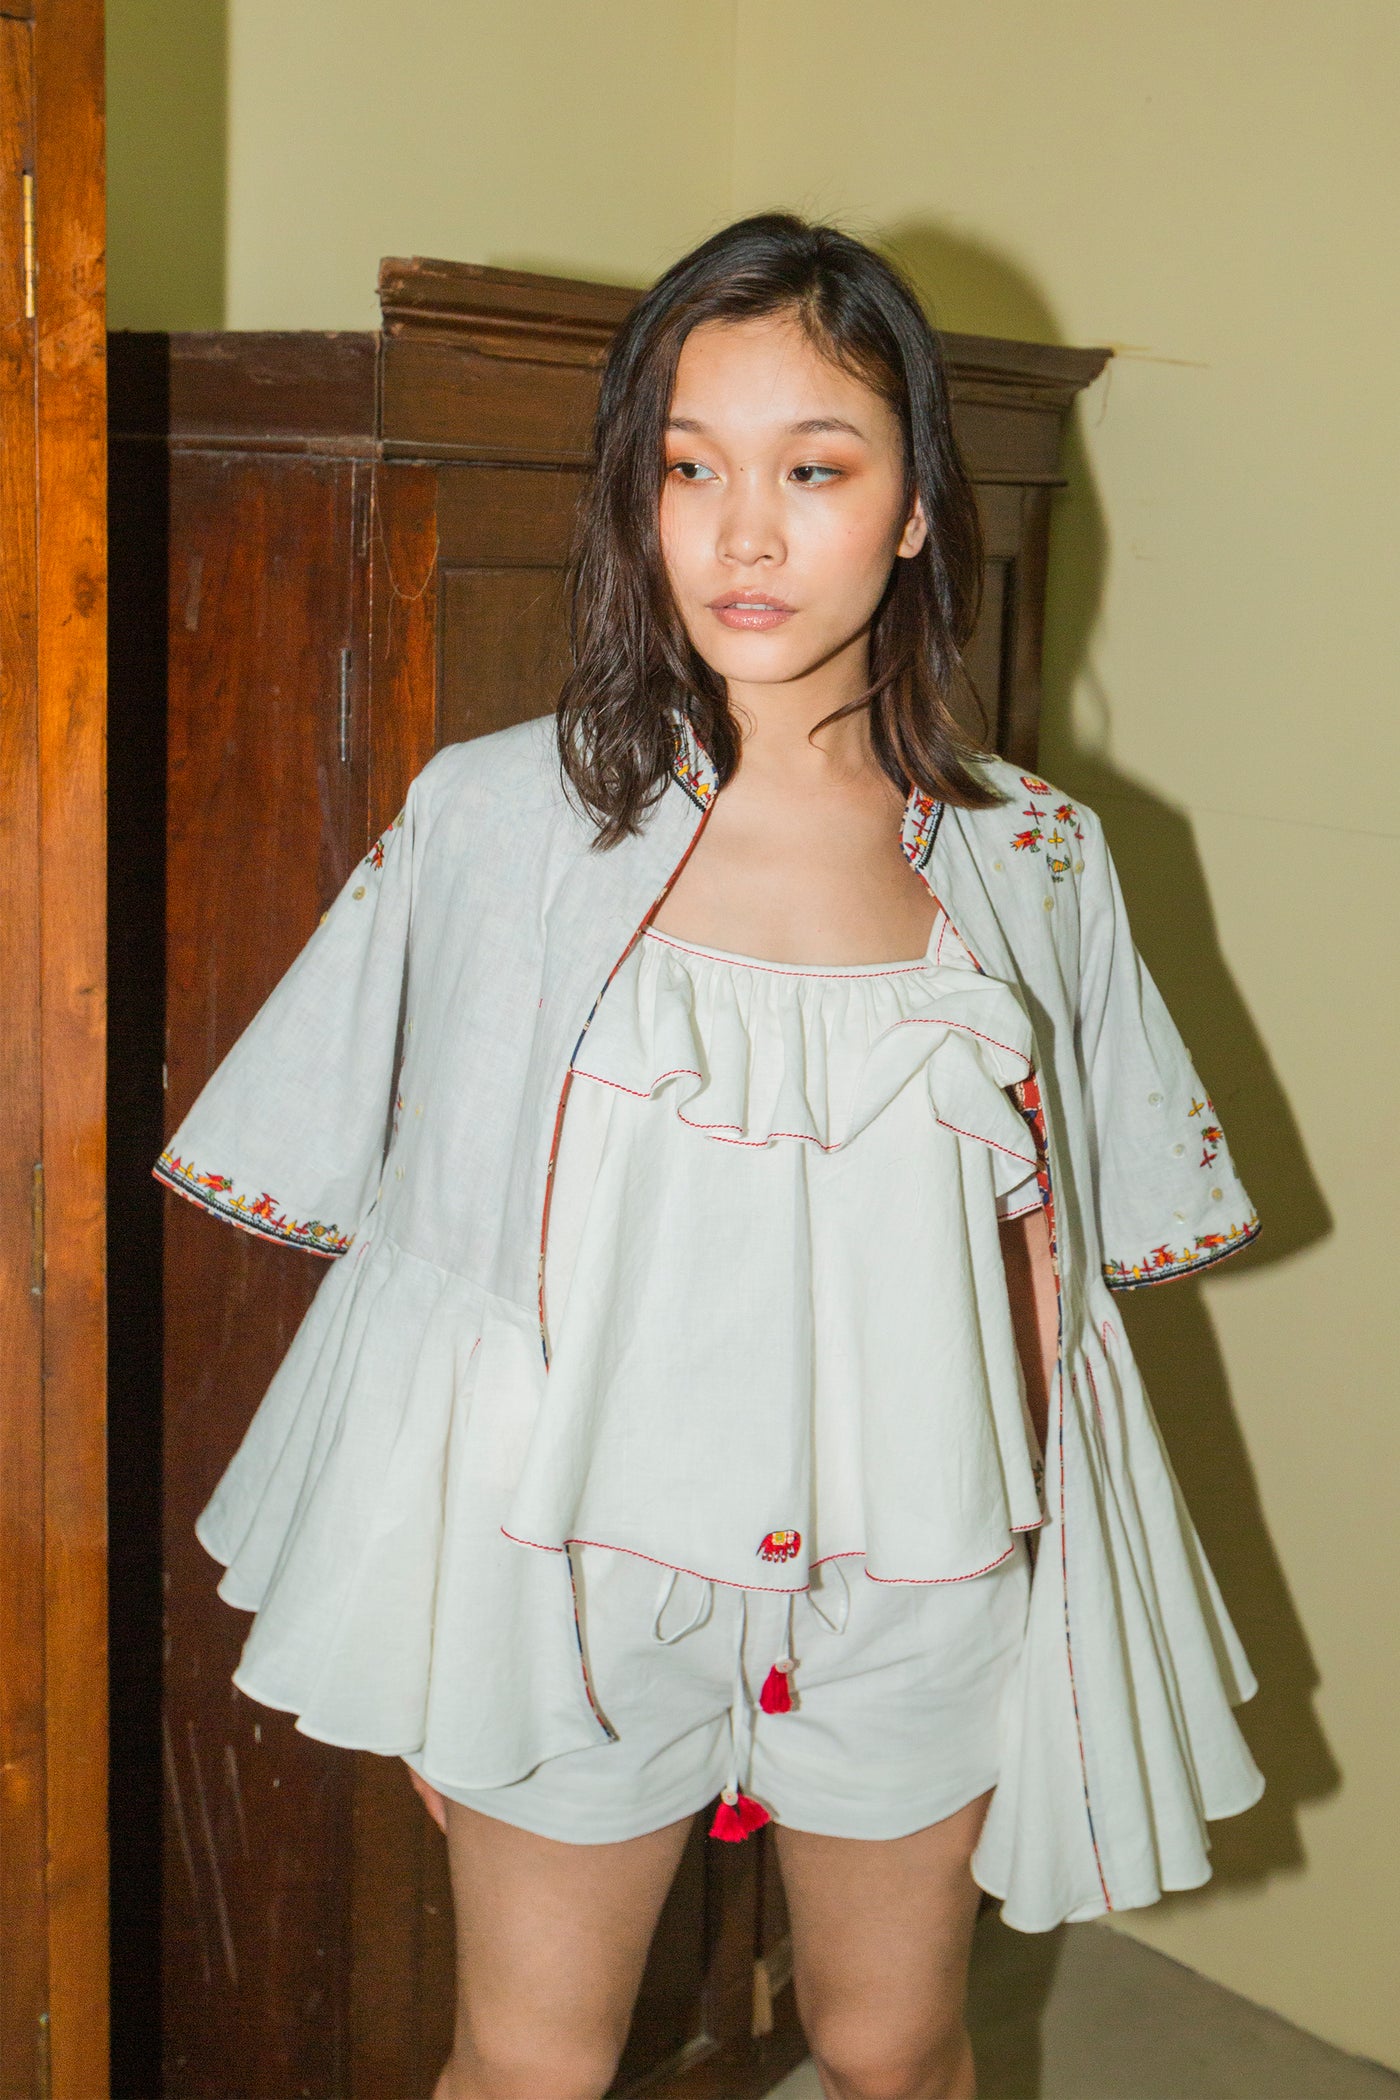 Nika Nikasha Hand woven embroidered peplum jacket white Indian Designer wear Melange Singapore Online Shopping Sustainable fashion clothing